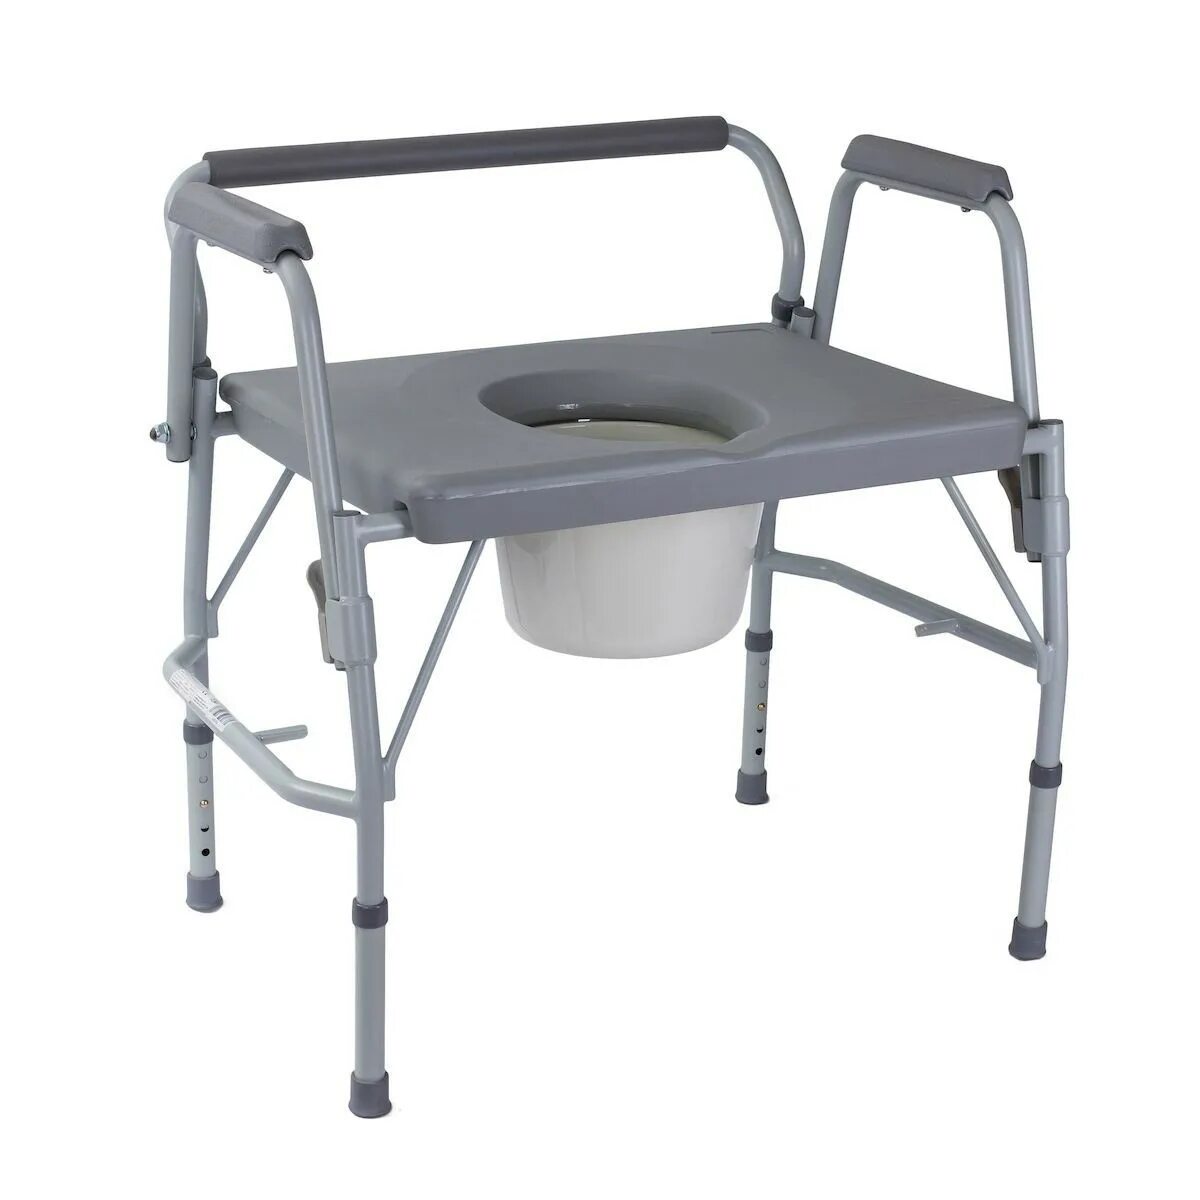 Авито стул туалет купить. Стул туалет OSD-bl710113. Стул медтехника для инвалидов для туалета медтехника. Санитарное кресло-туалет Care RPM 68500. Кресло туалет ОСД.